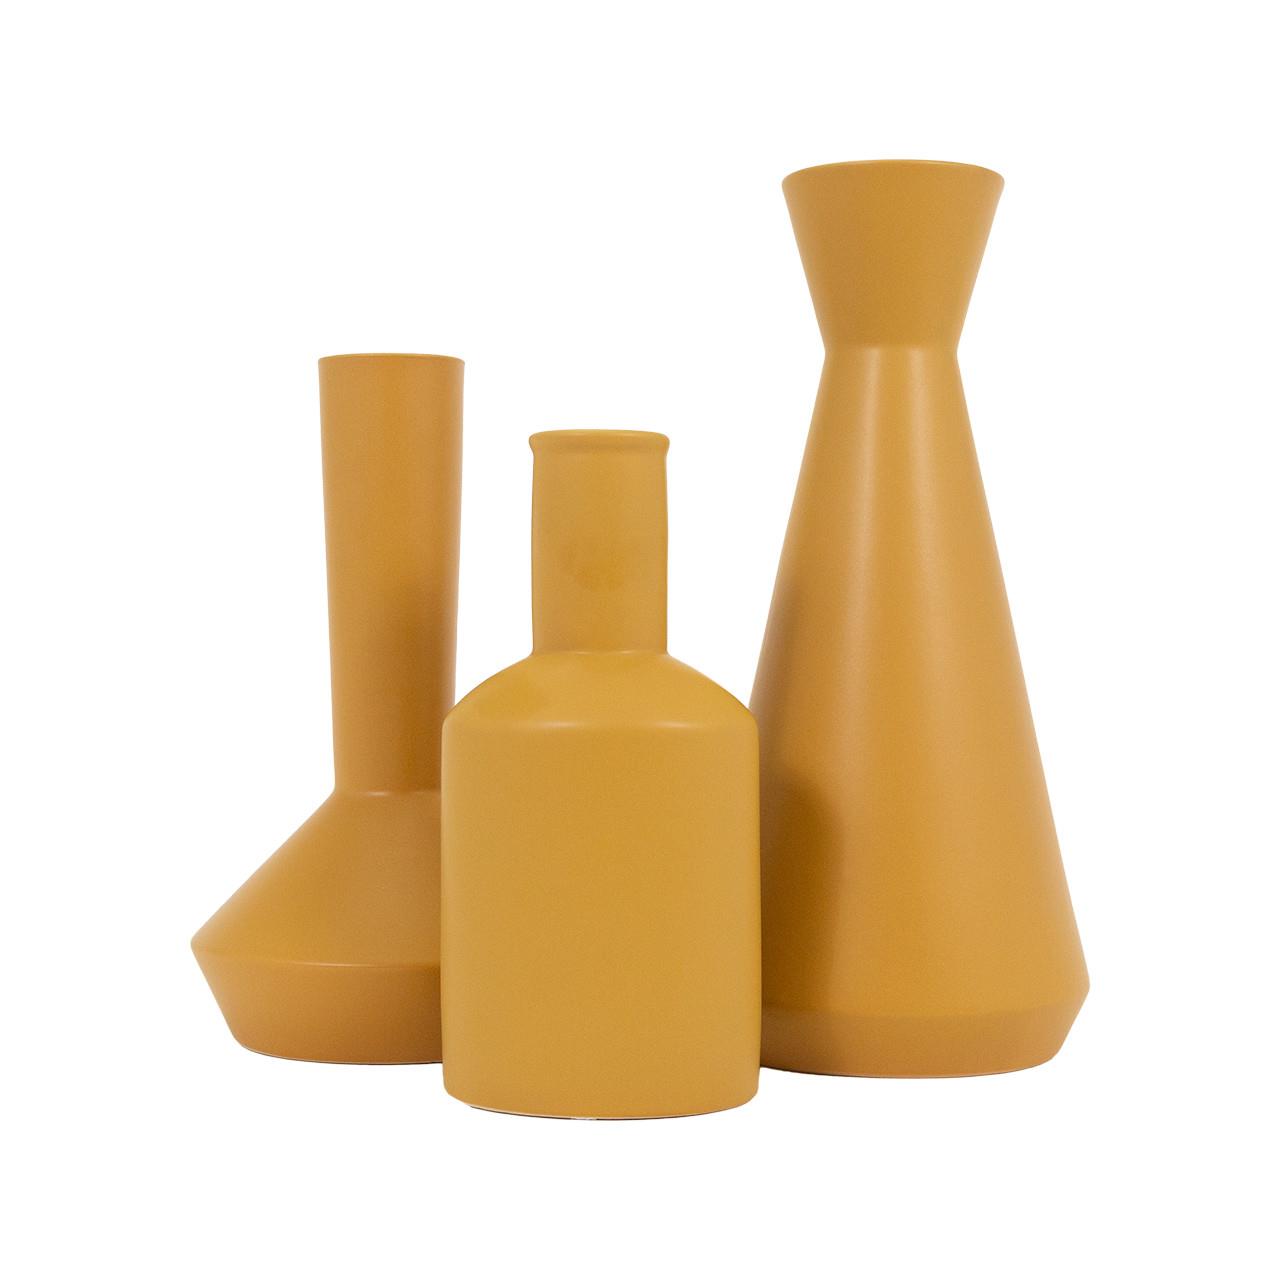 Picture of Tangerine Vase, Medium